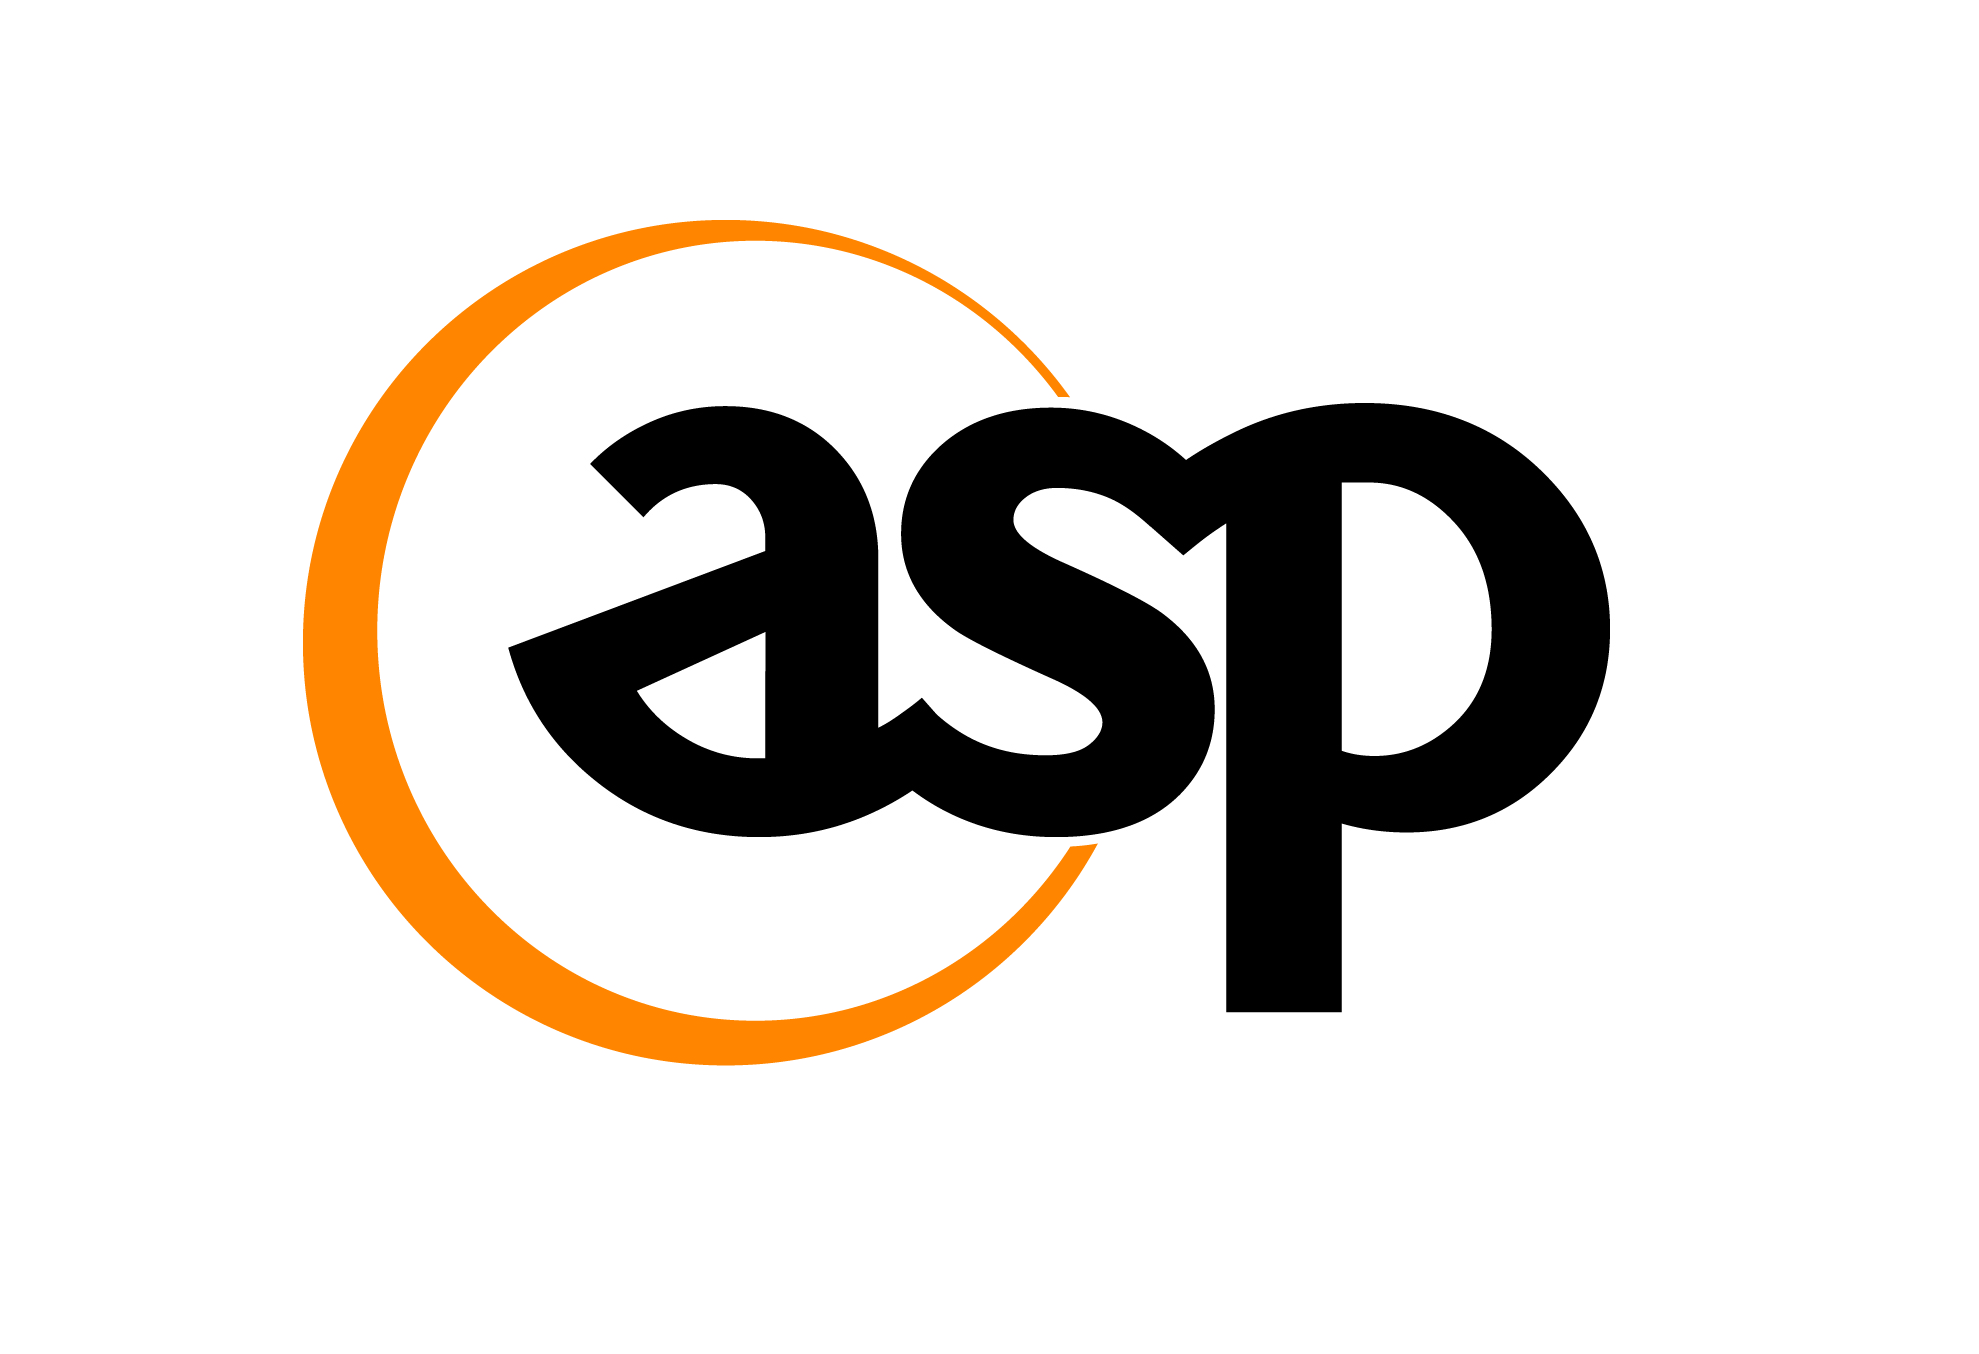 Asp service. АСП лого. Asp запчасти logo. С эмблемой asp. Asp Group логотип.